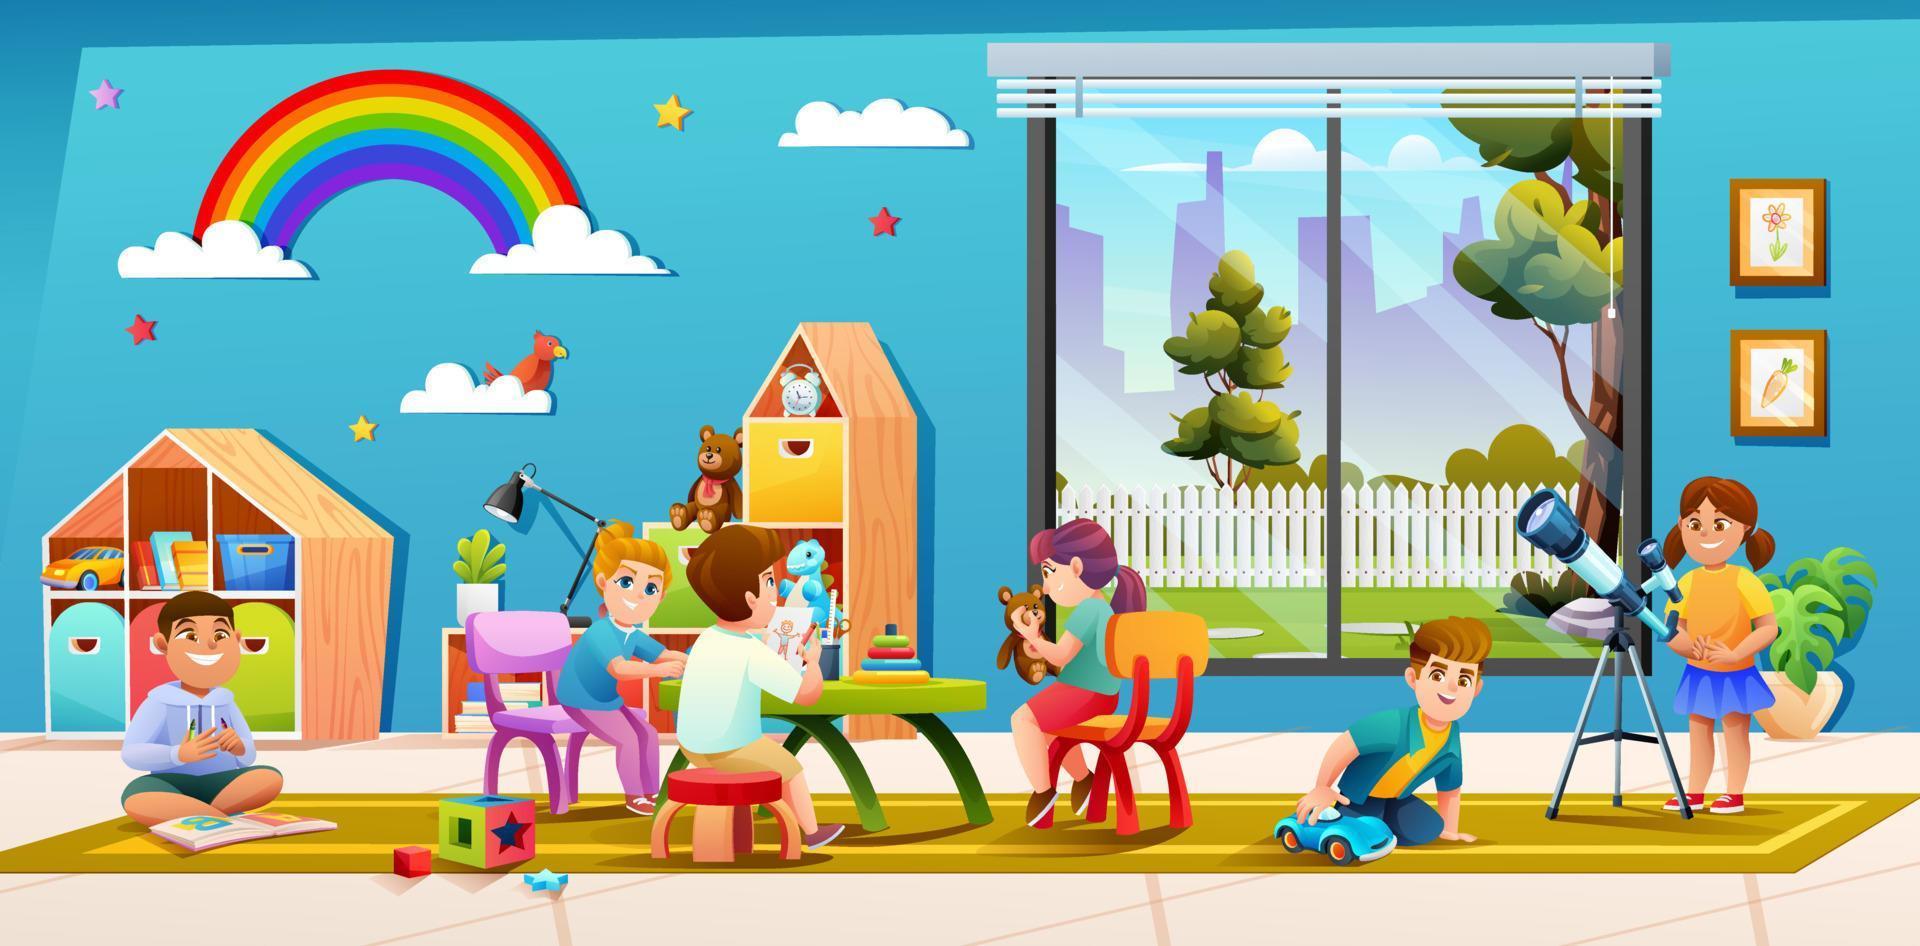 niños alegres jugando juntos en el aula de jardín de infantes ilustración de dibujos animados vector